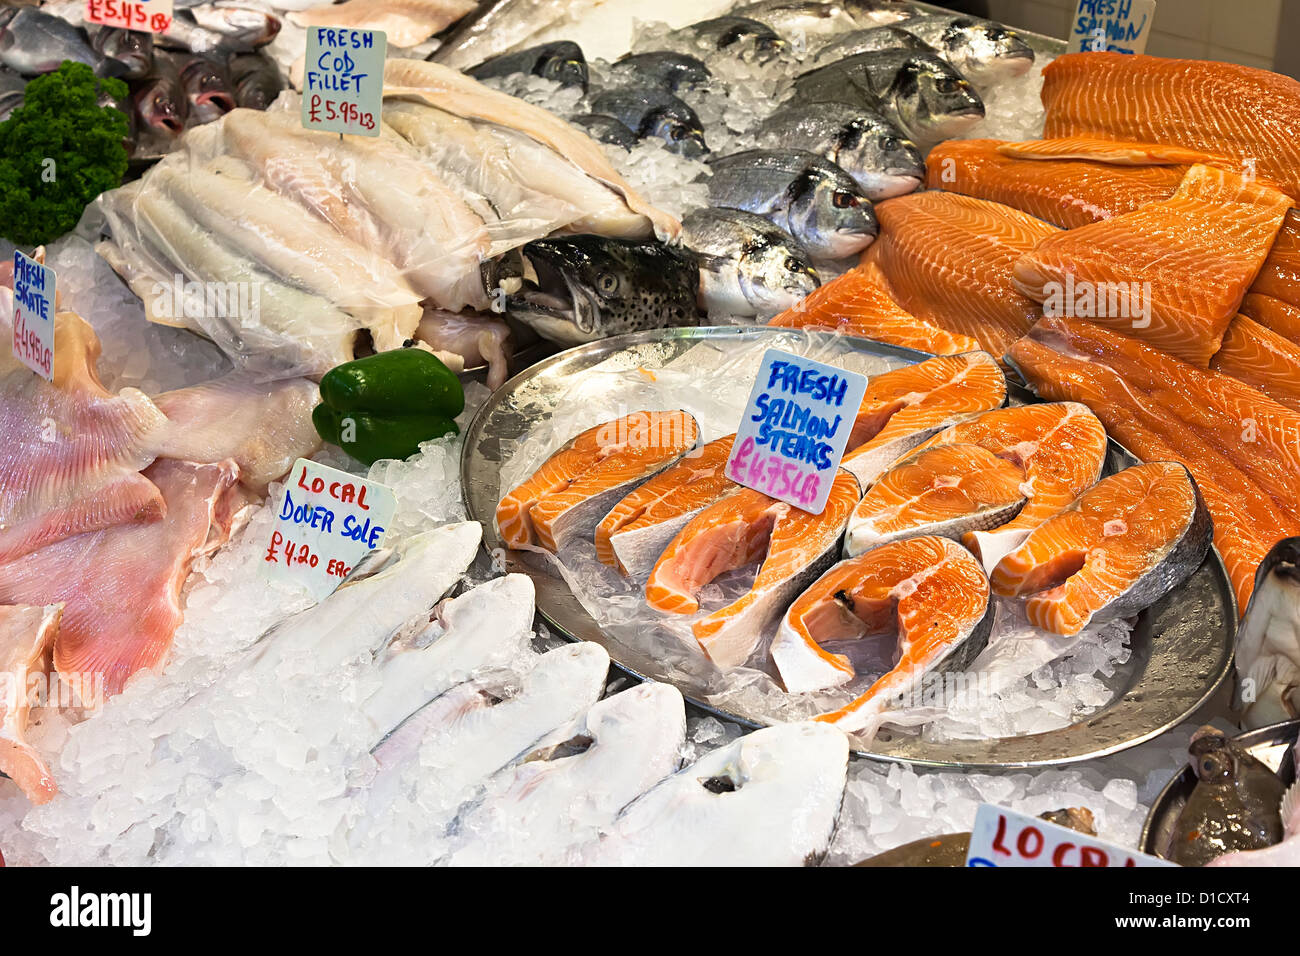 Pesce fresco in vendita sul mercato centrale di stallo pescivendolo, St Helier, Jersey, Isole del Canale, REGNO UNITO Foto Stock